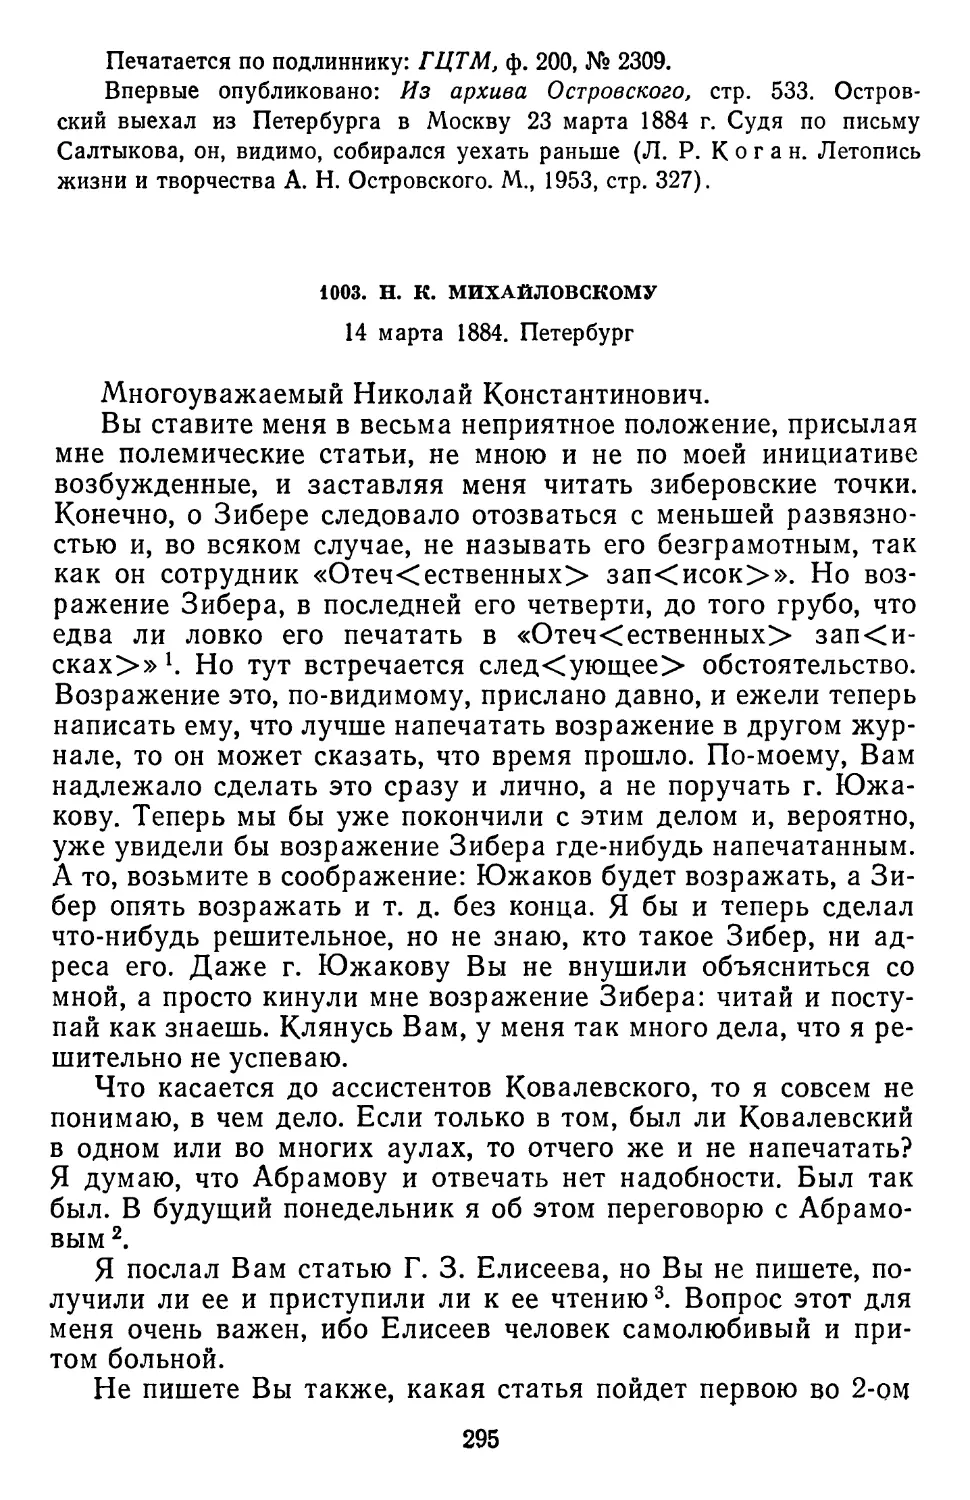 1003.Н. К. Михайловскому. 14 марта 1884. Петербург